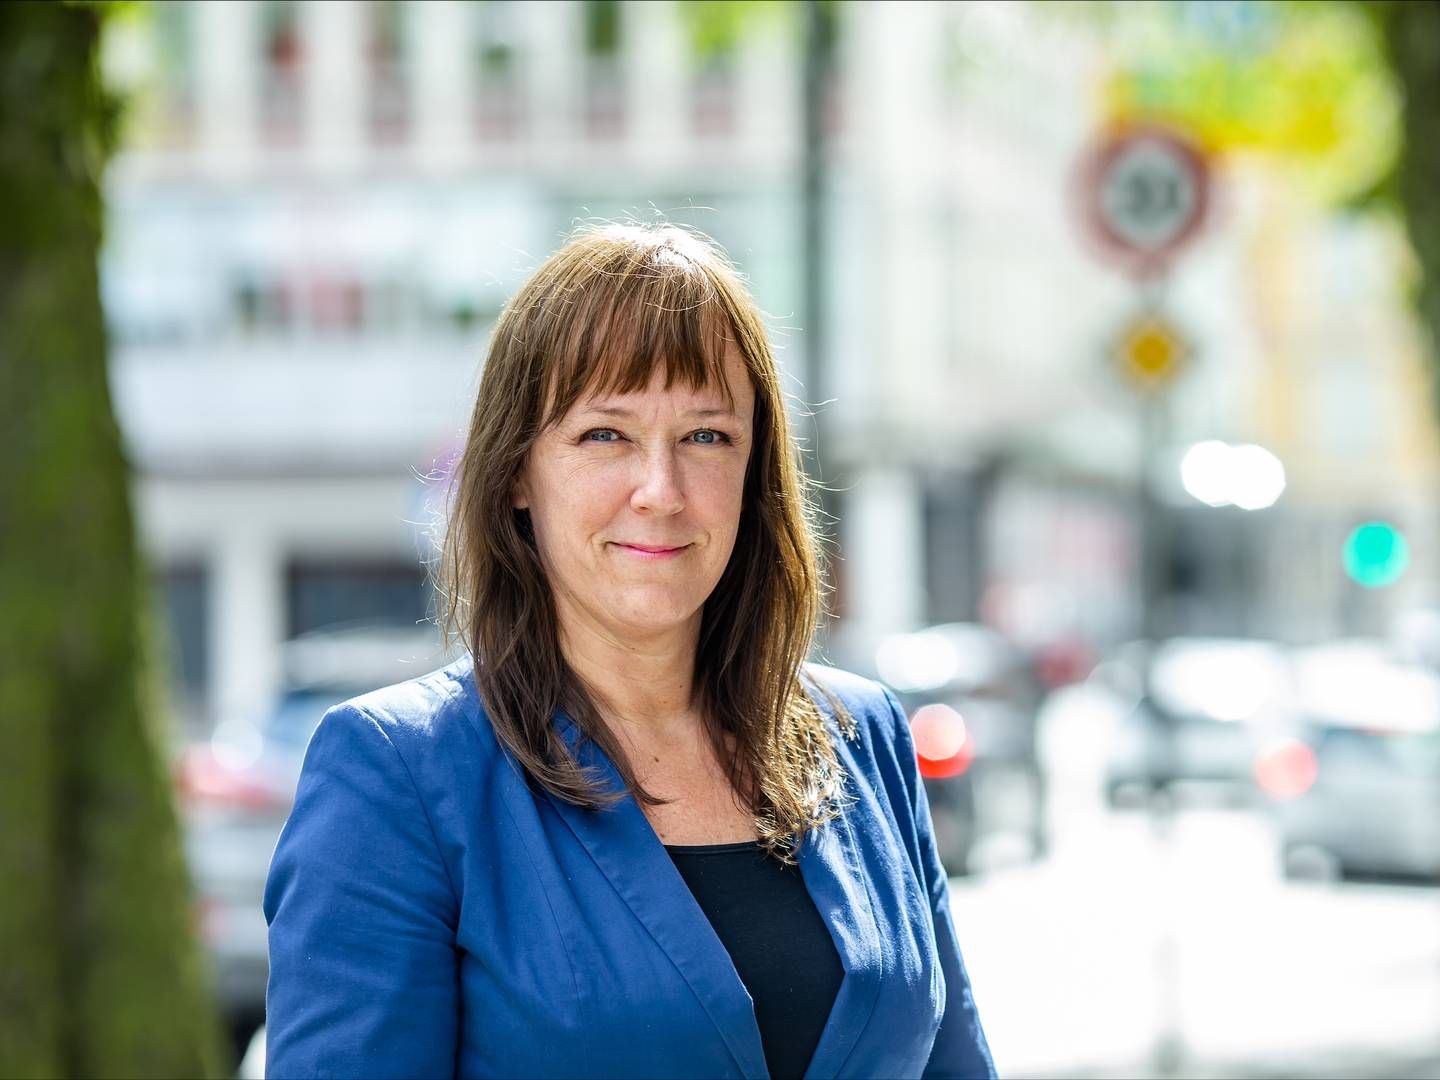 HEKTISK: Kommunikasjonssjef i Frende, Heidi Slettemoen, sier at den siste tiden har vært hektisk. | Foto: Frende Forsikring